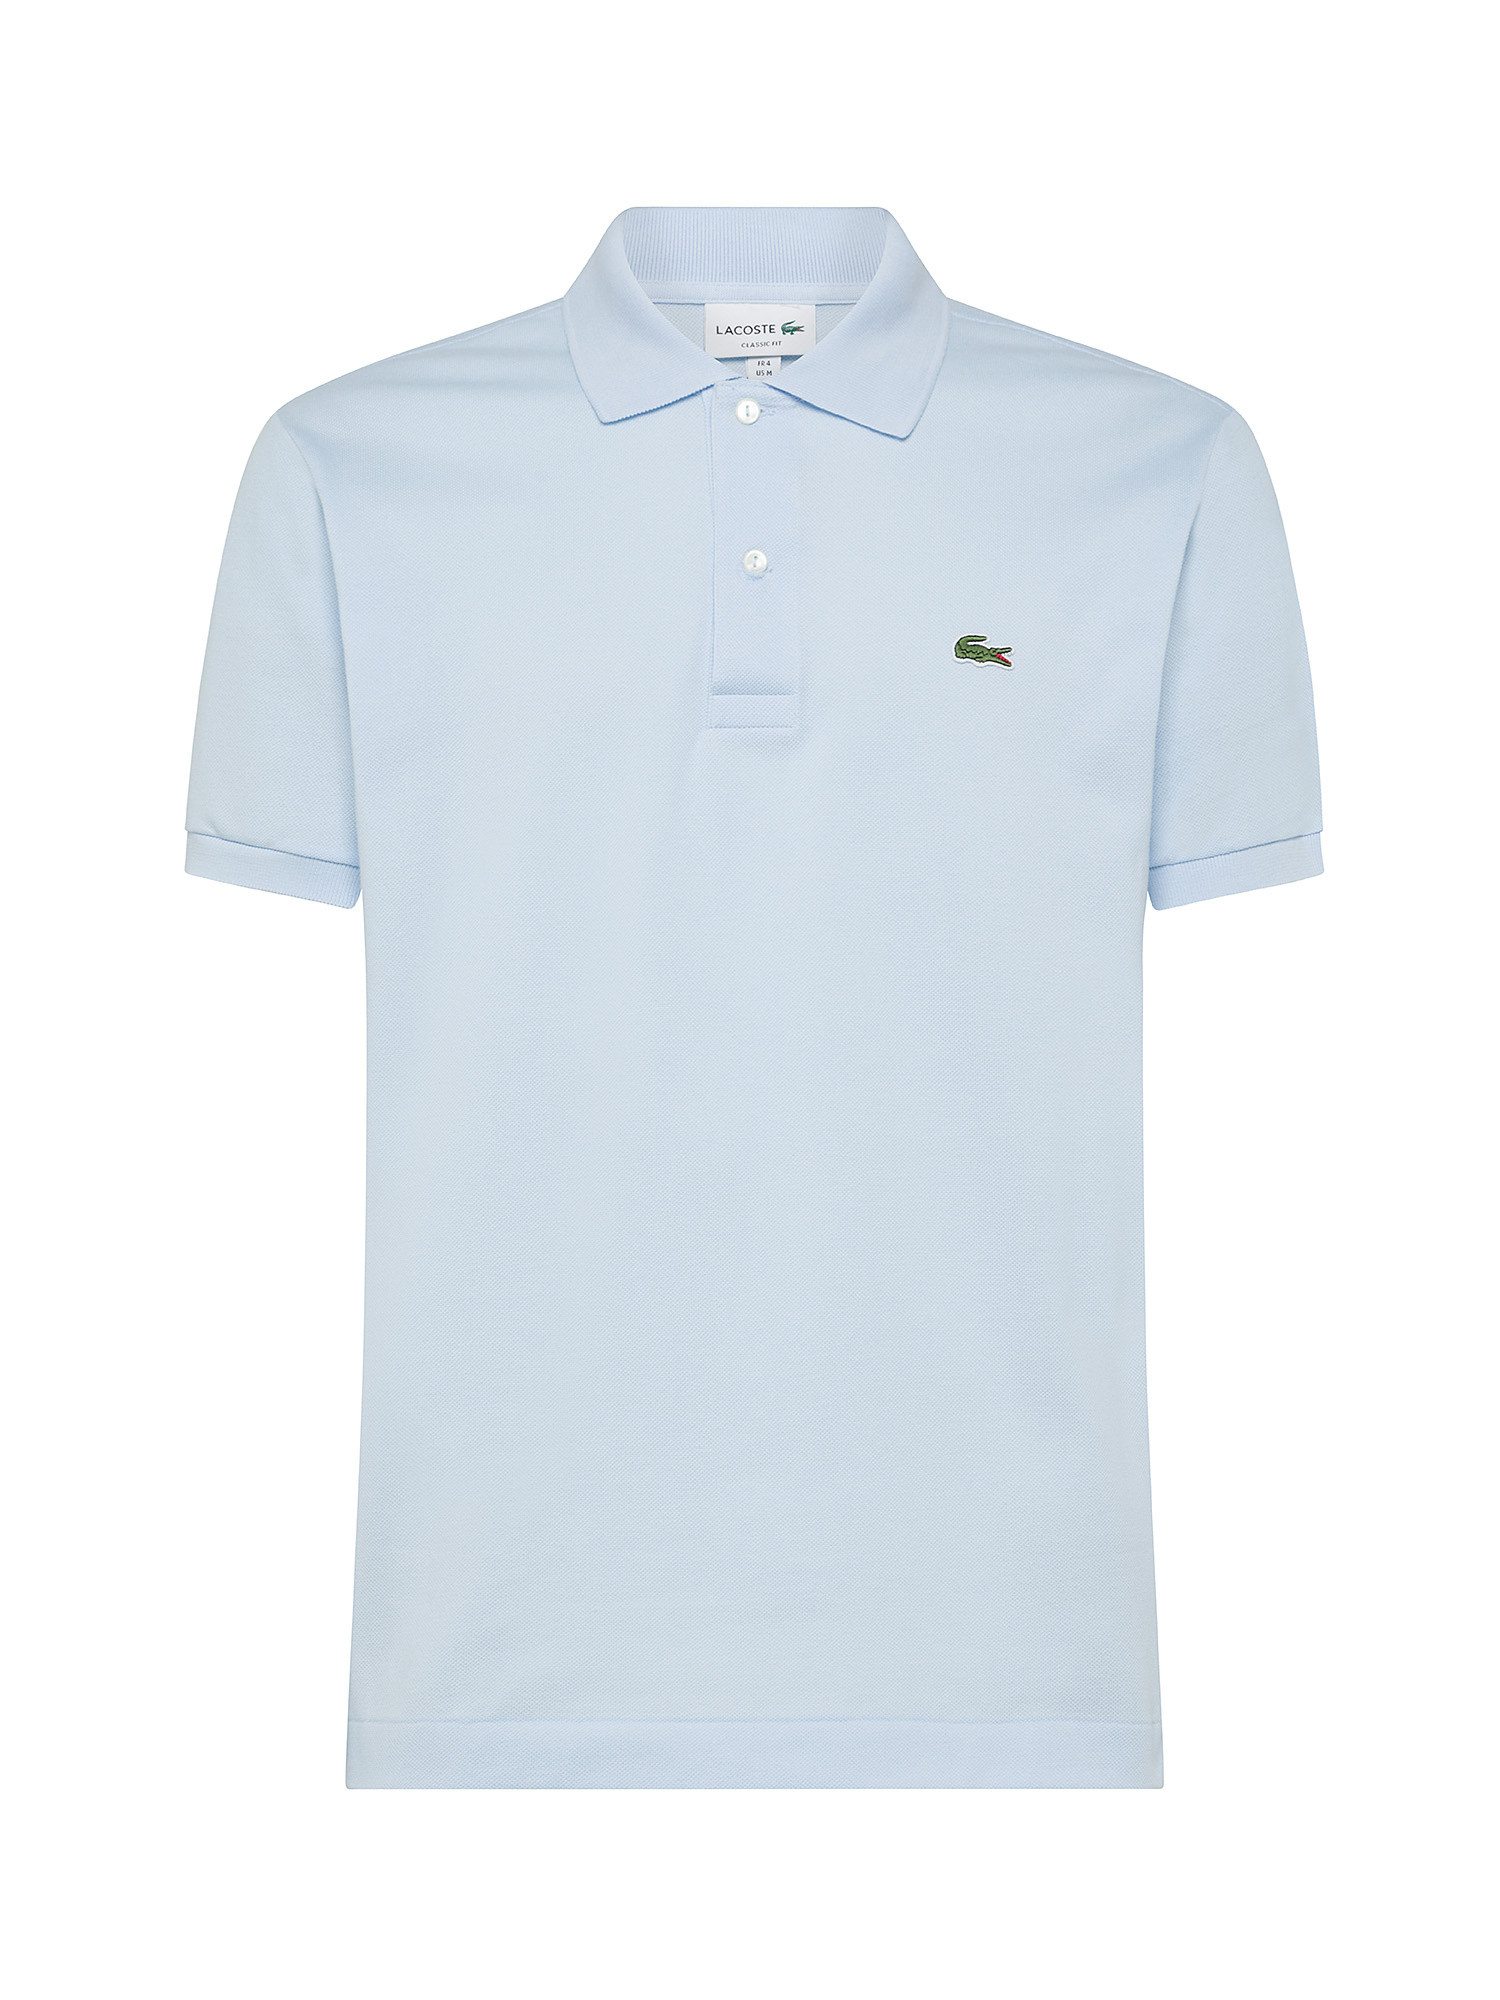 Lacoste - Classic cut polo shirt in petit piquè cotton, Light Blue, large image number 0